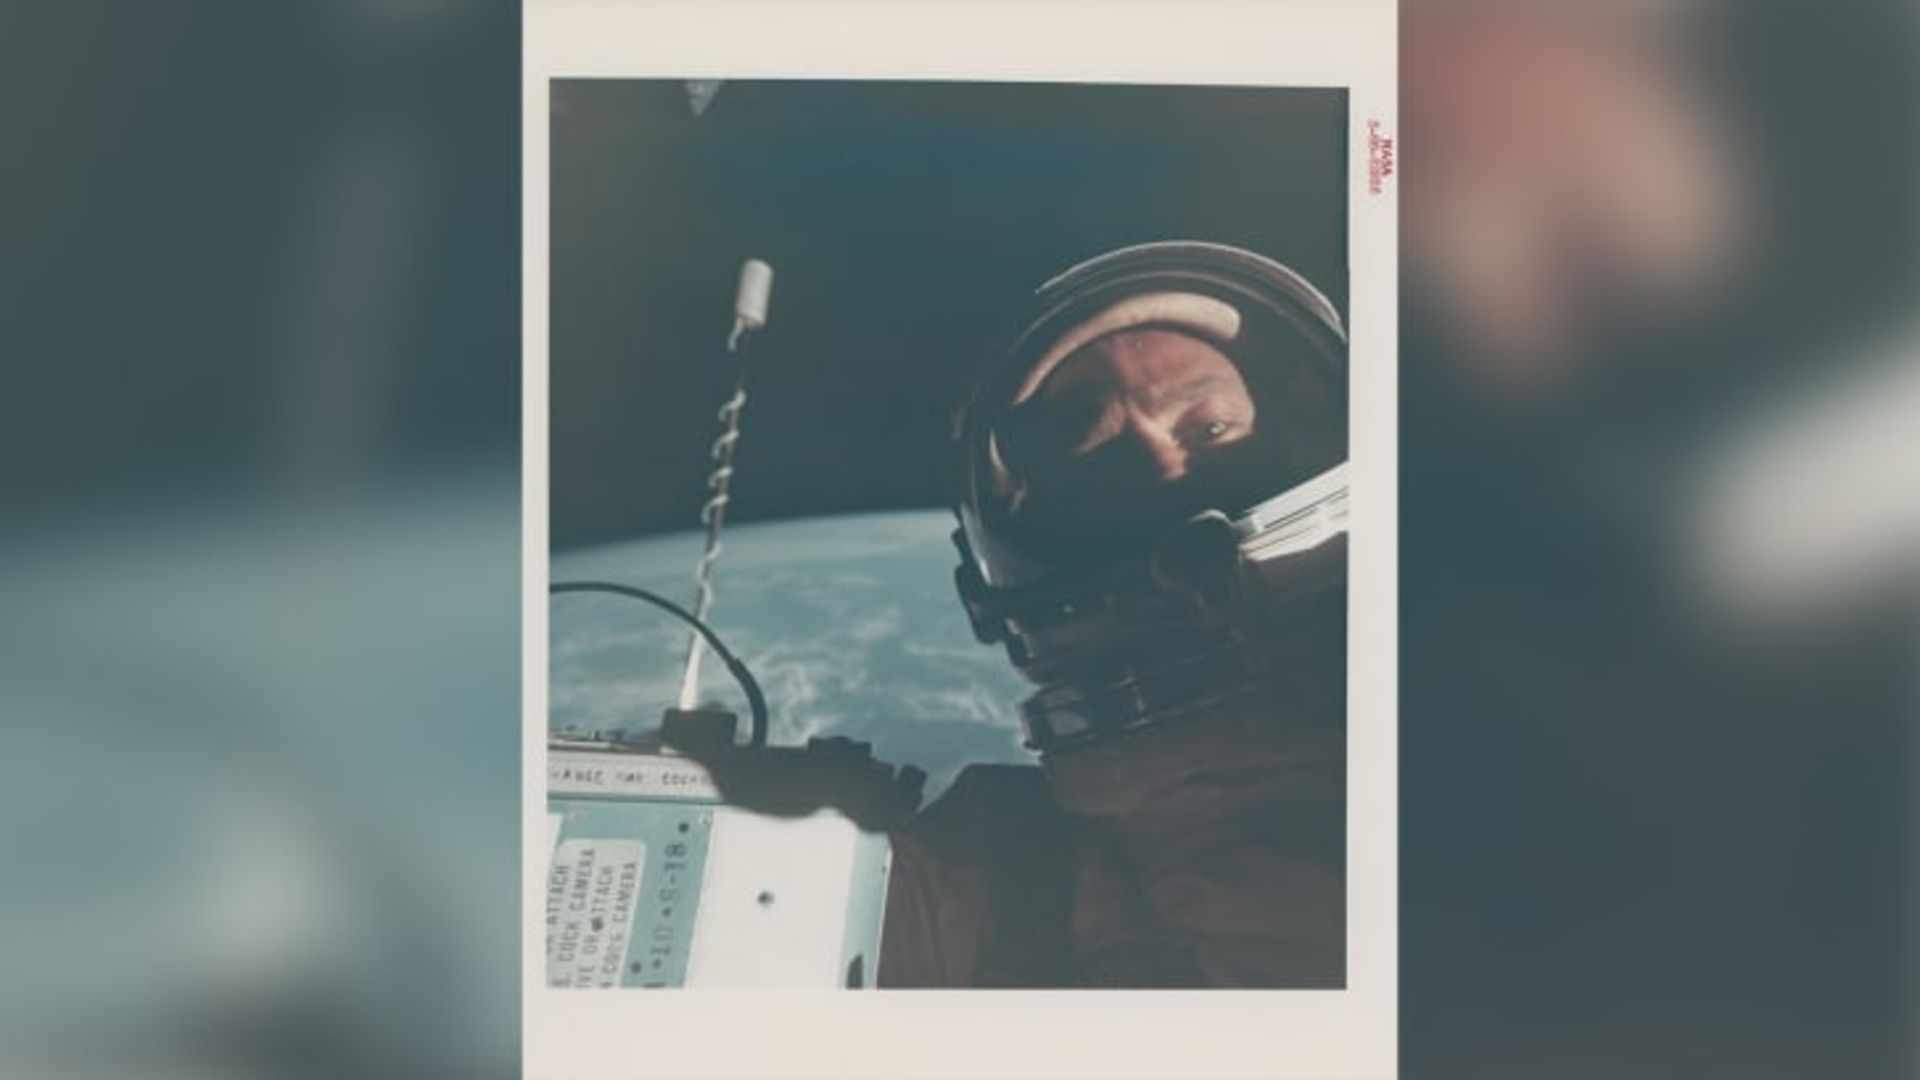 اولین سلفی فضایی که در سال ۱۹۶۶ توسط باز آلدرین گرفته شد